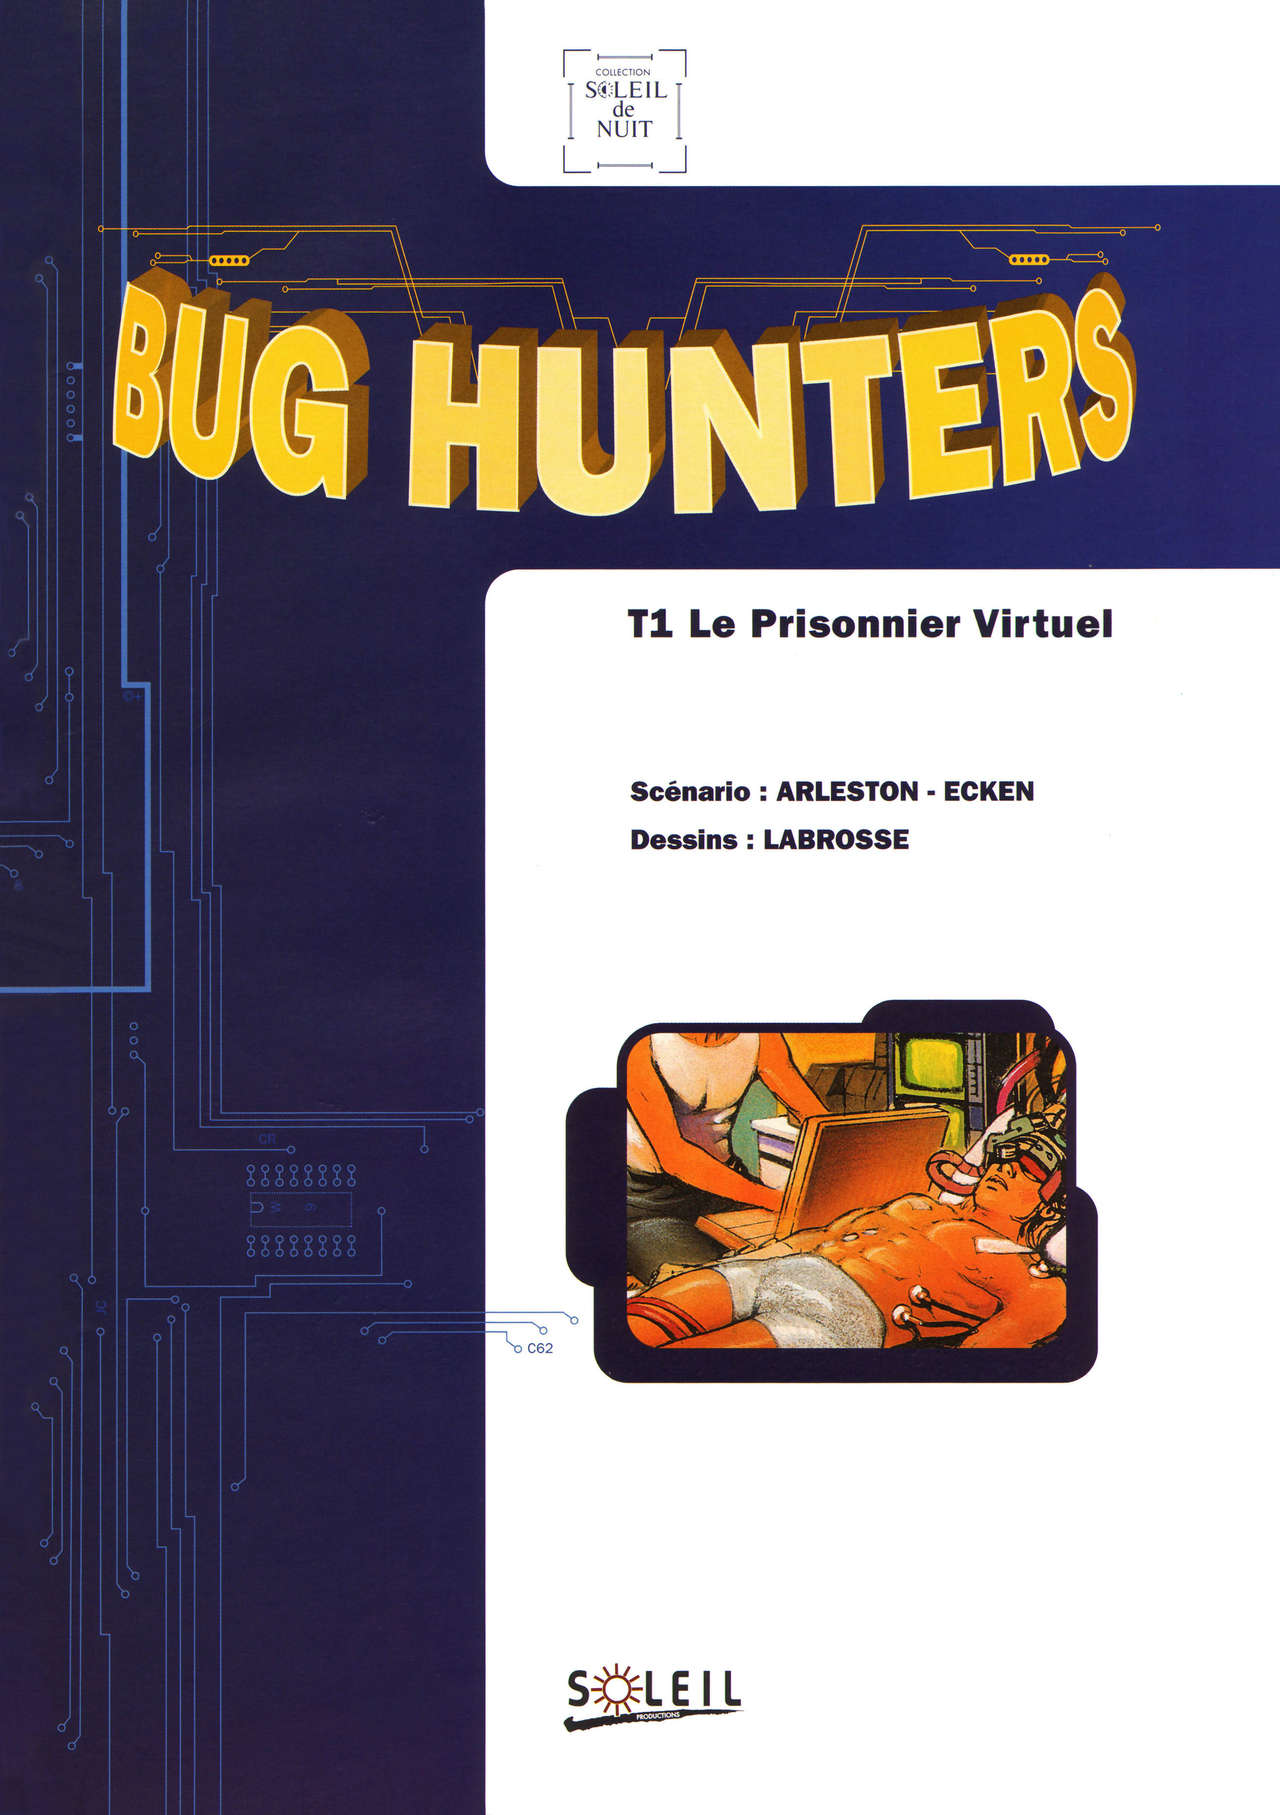 Bug hunters T01 -Le Prisonnier Virtuel numero d'image 2